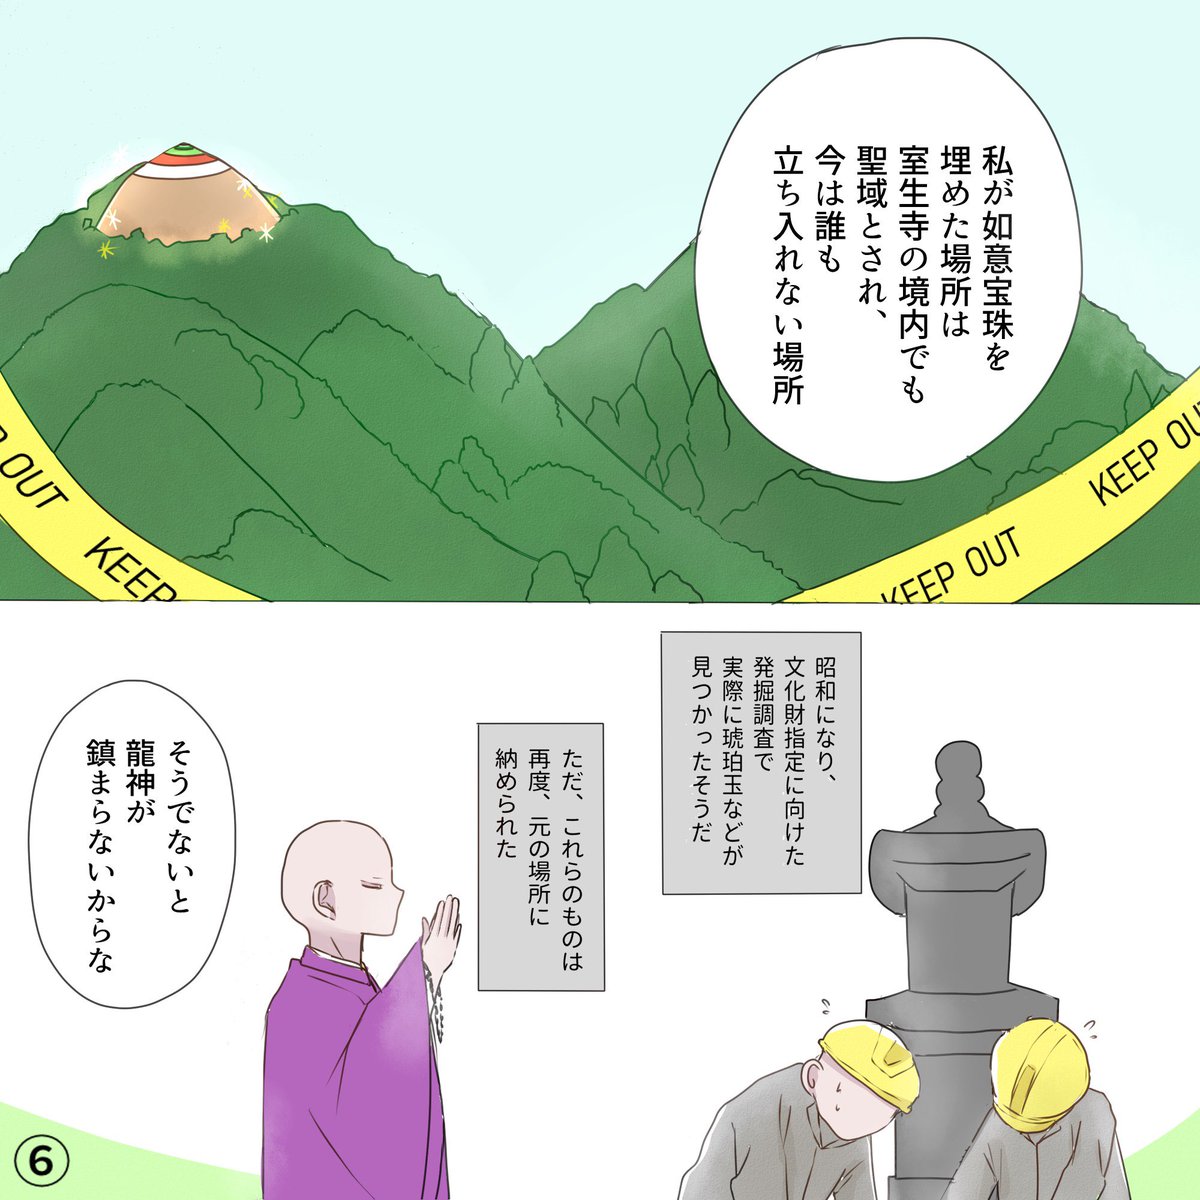 奈良県の室生寺について書かせていただきました!最近身近に感じるSDGsが関係してる…?読んでみてください!
(2/2)
他の漫画も読めます!@narakankopuromo

#漫画でみる奈良の歴史 #PR 